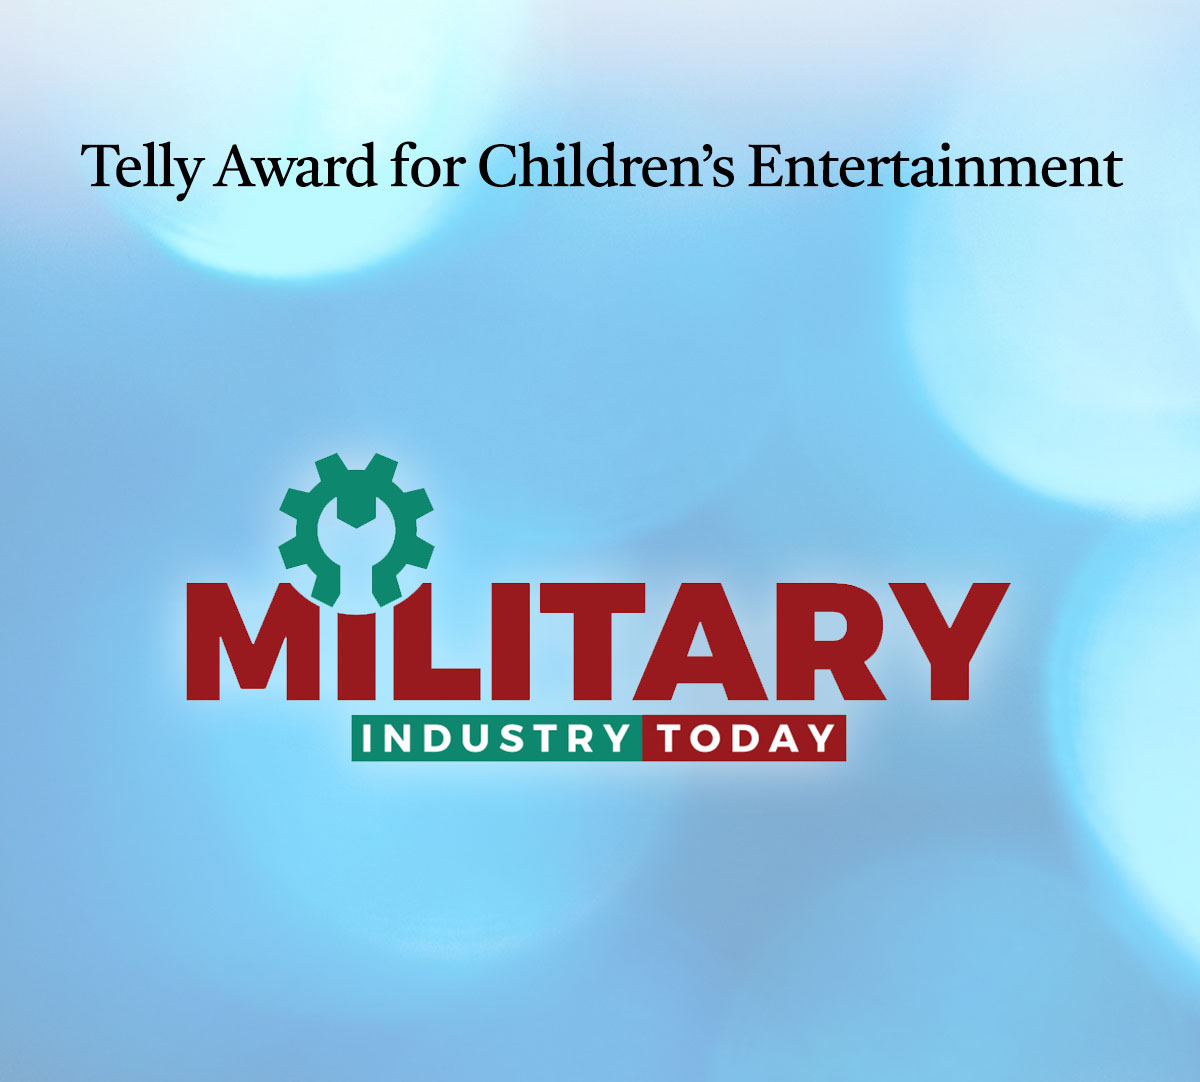 Telly Award for Children’s Entertainment • News